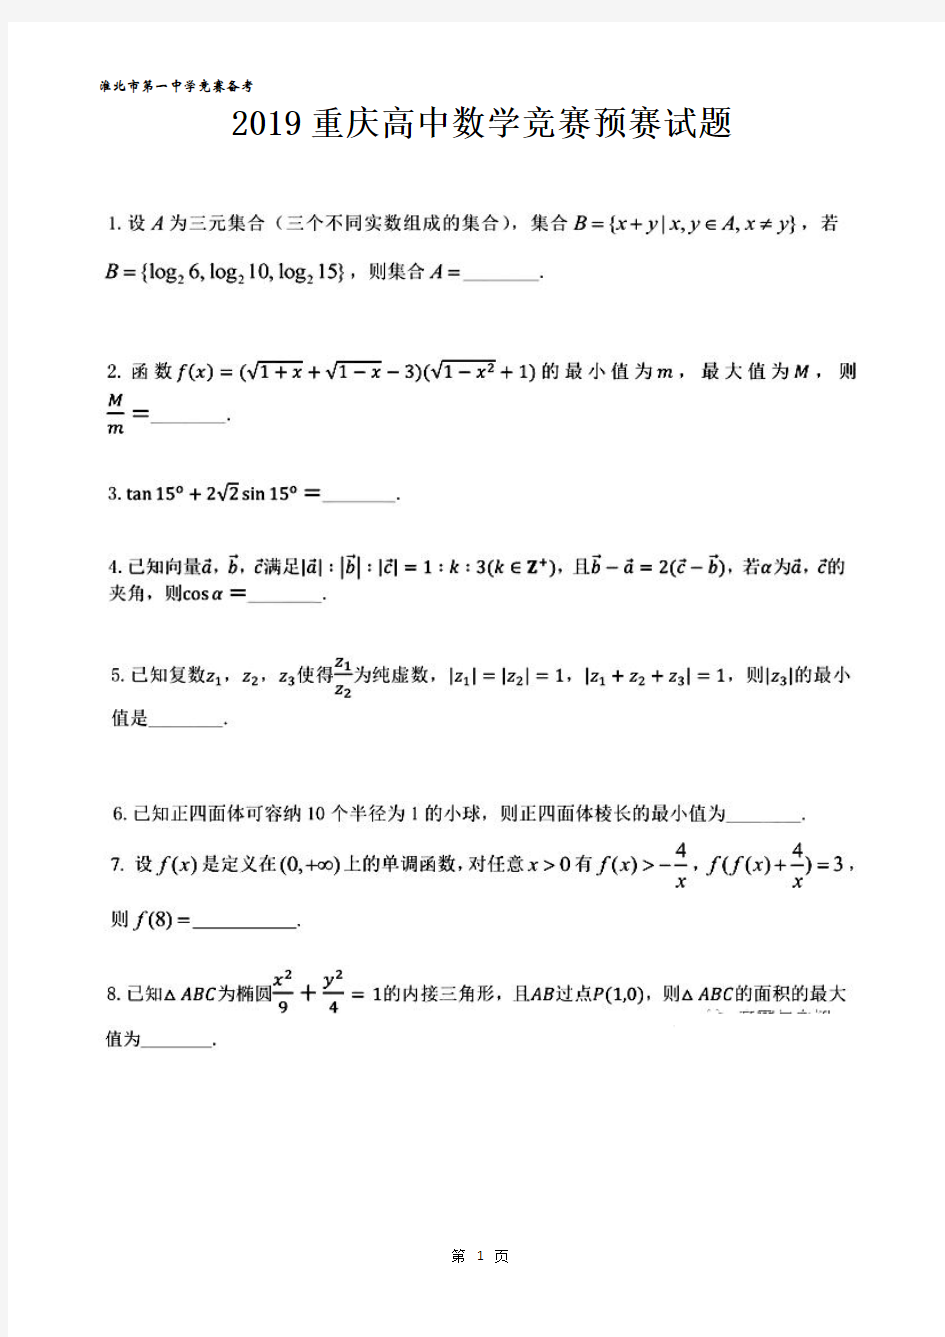 2019重庆高中数学竞赛预赛试题及答案